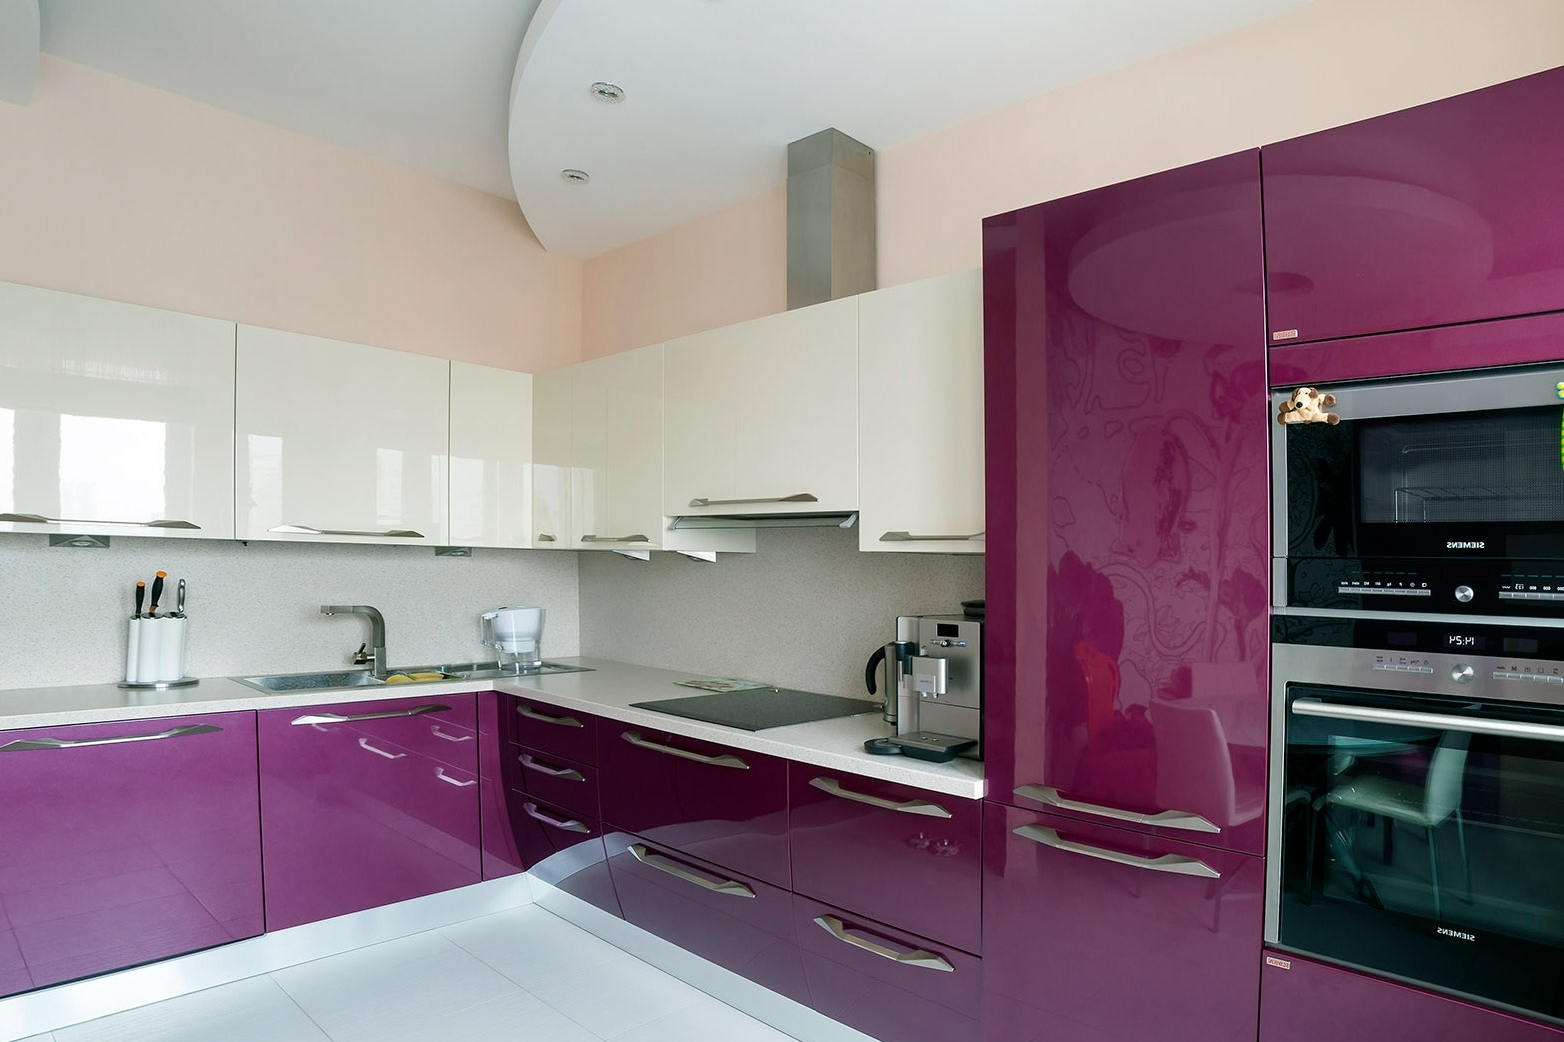 Глянцевая поверхность кухни. Кухня в фиолетовом цвете. Кухни цветные глянцевые. Кухня в сиреневом цвете. Фиолетовая глянцевая кухня.